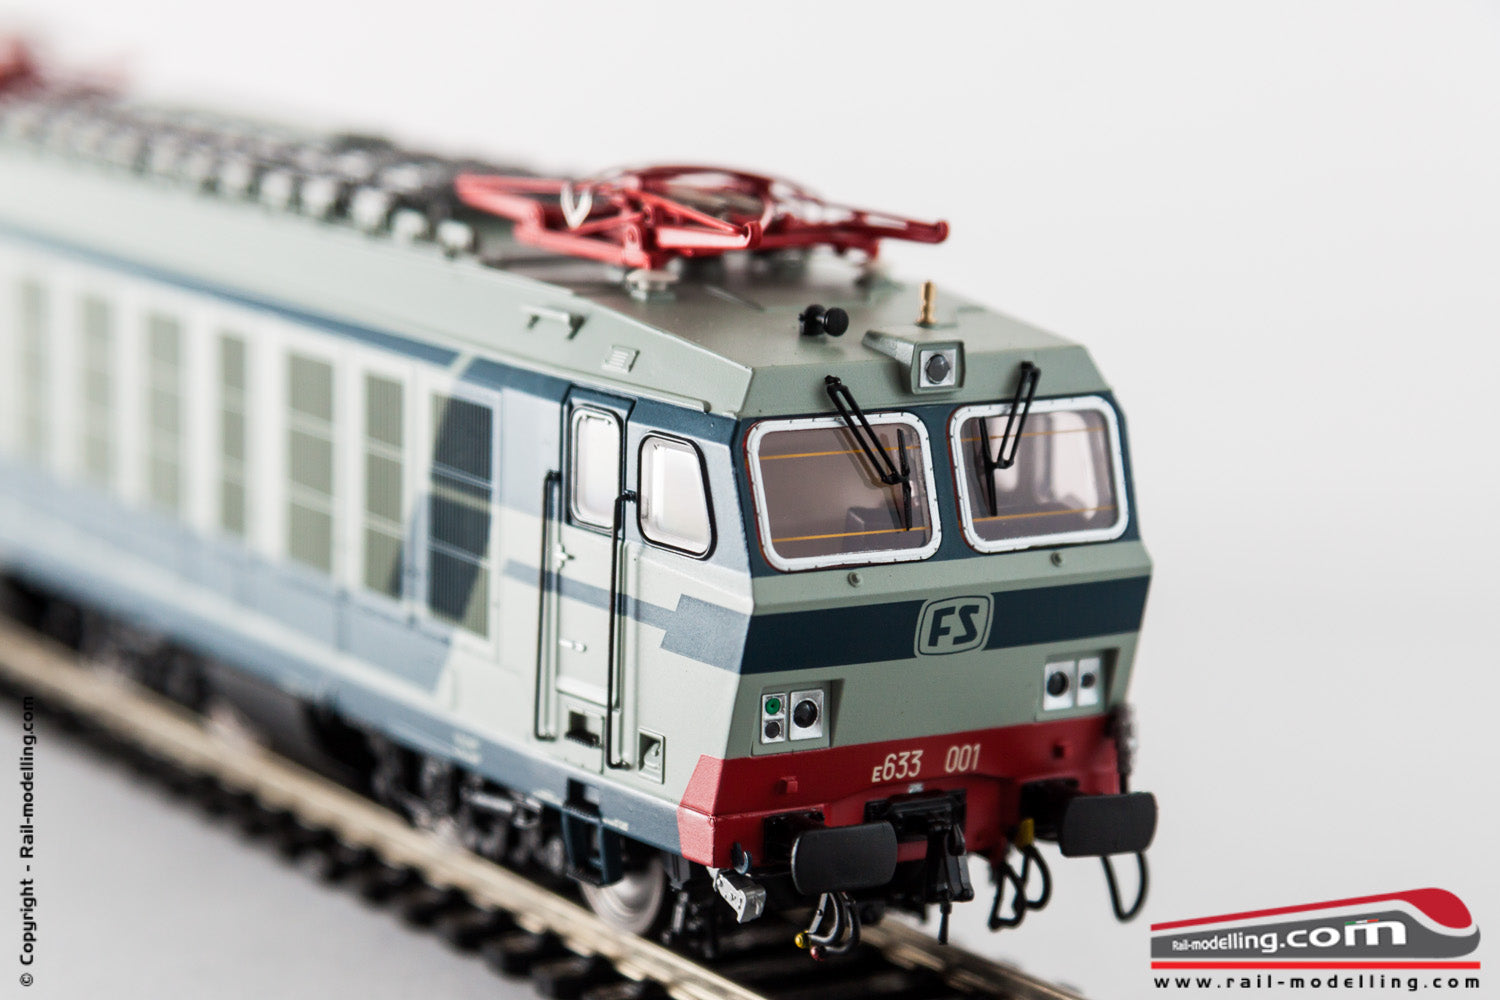 ACME 60472 - H0 1:87 - Locomotiva elettrica E 633 001 con pantografi FS 52 Epoca IV